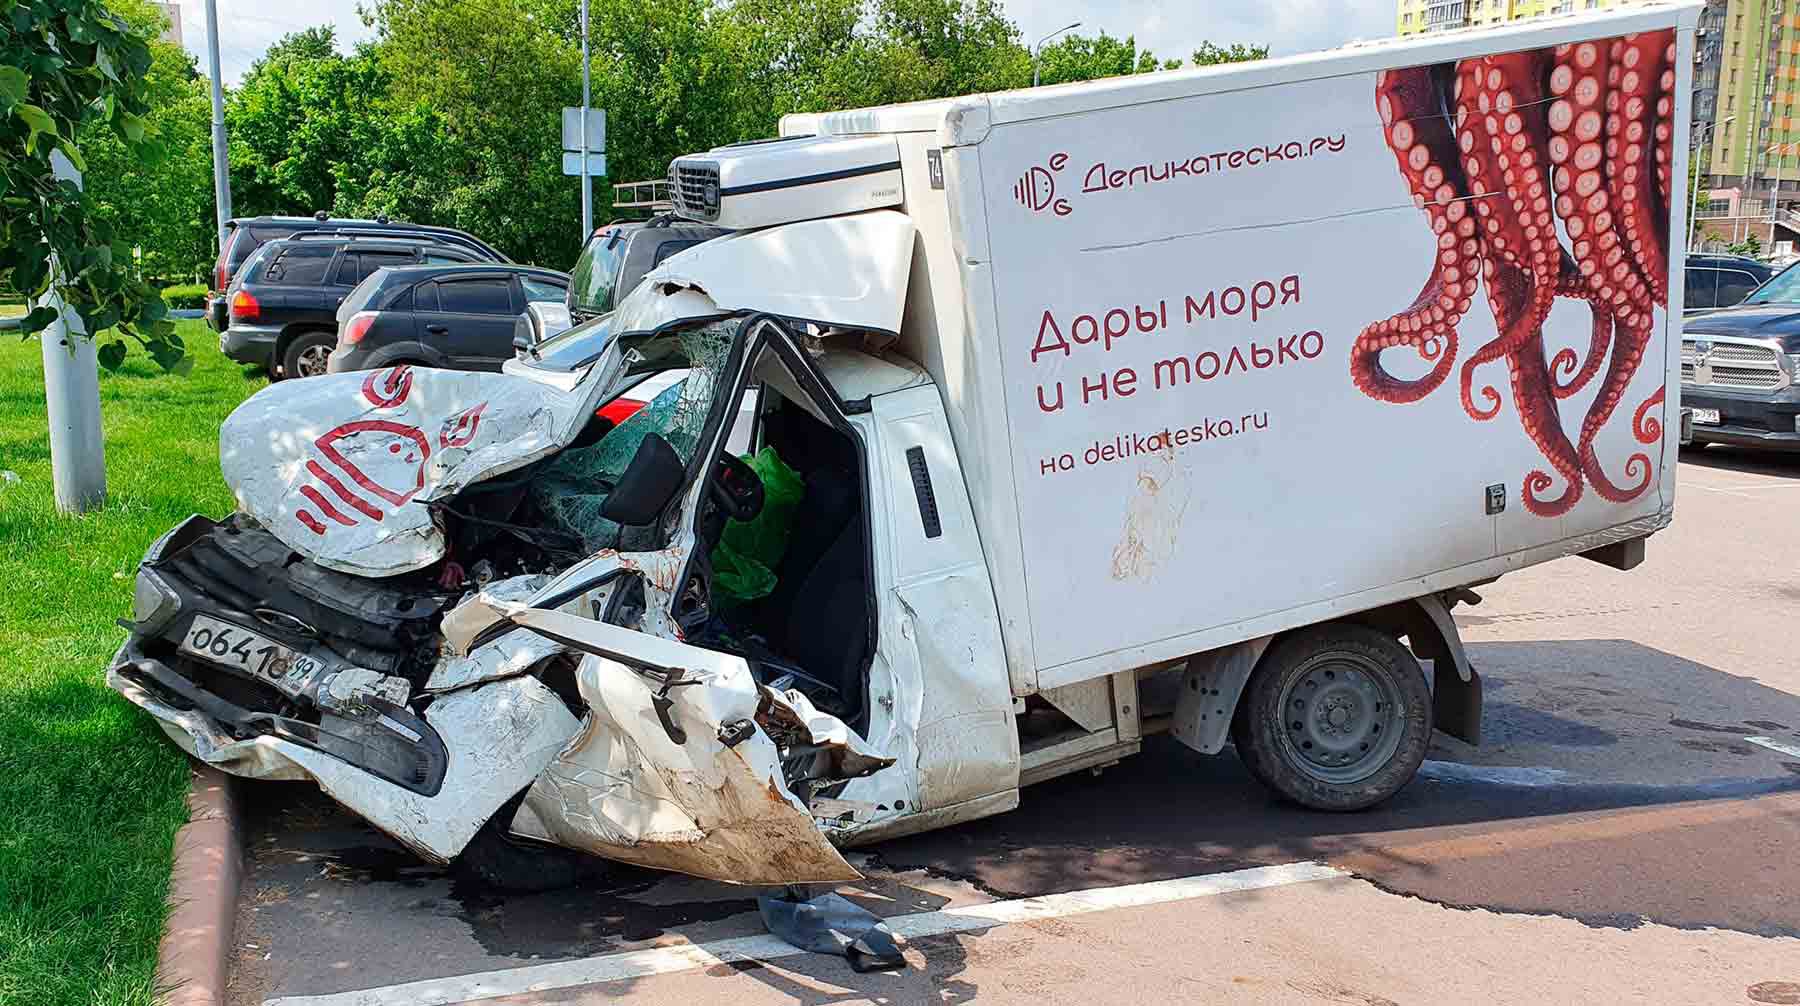 Машина погибшего в ДТП с участием актера Михаила Ефремова Сергея Захарова